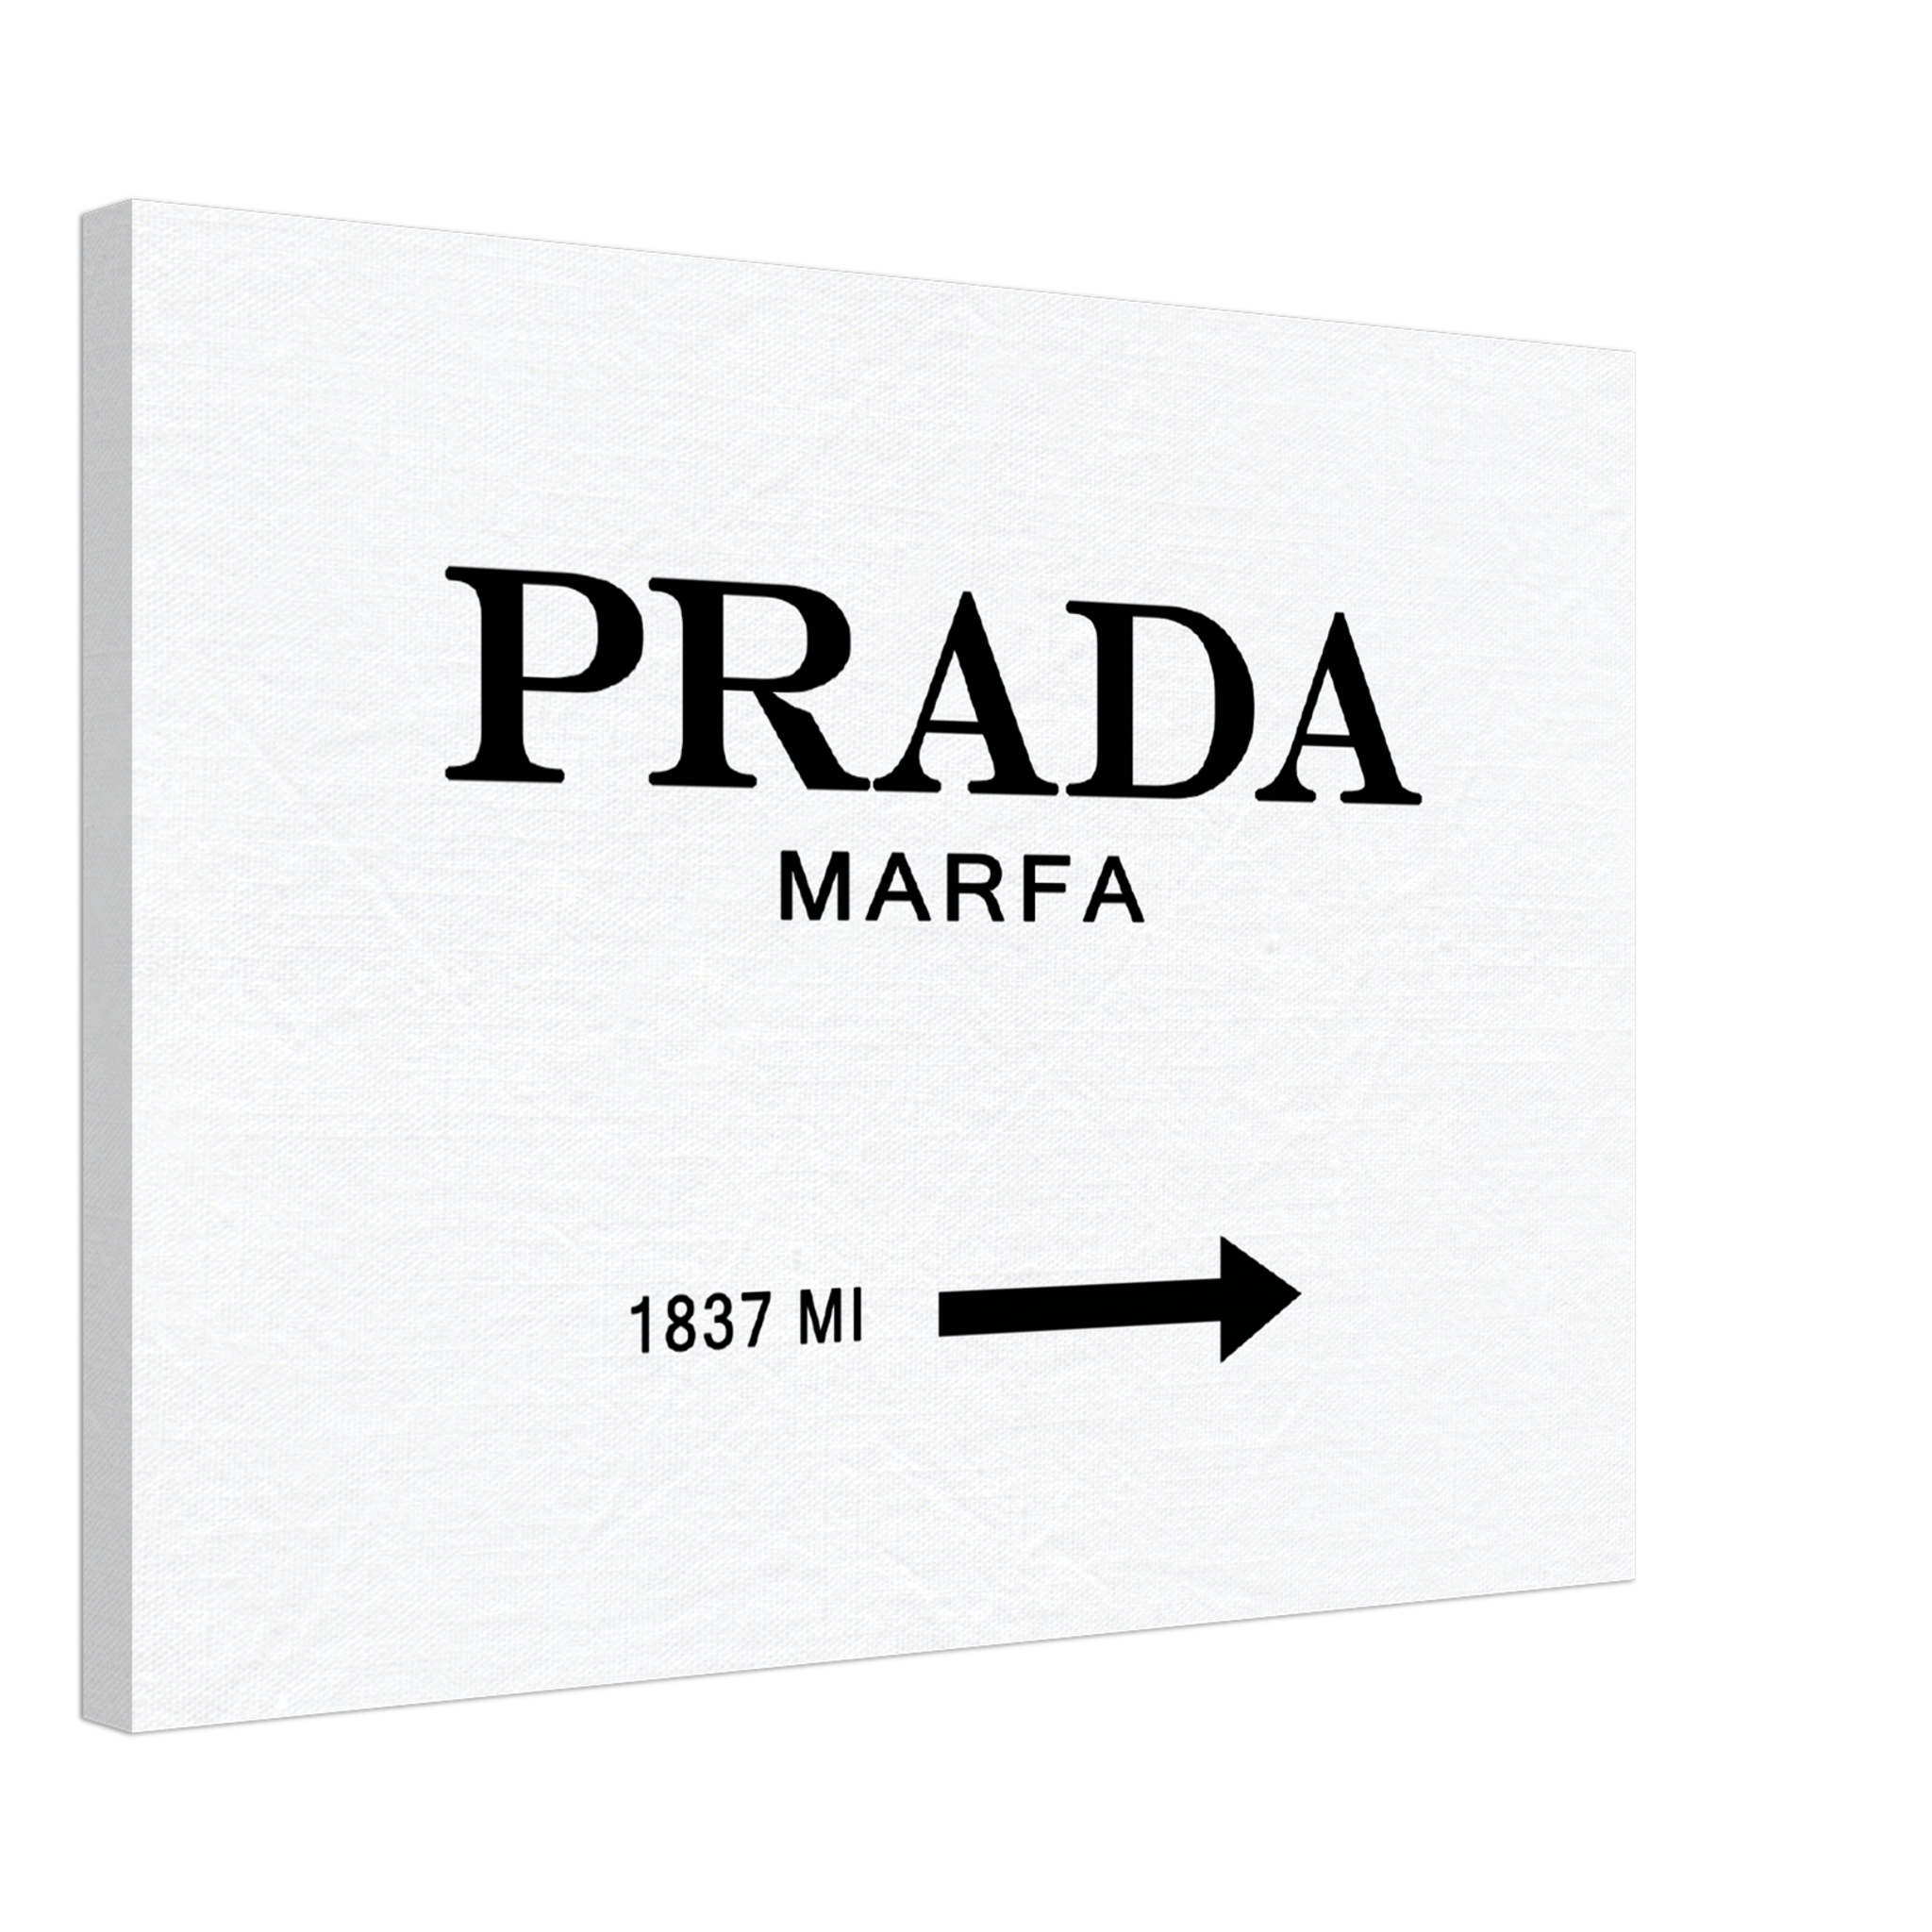 Prada Marfa Original Canvas